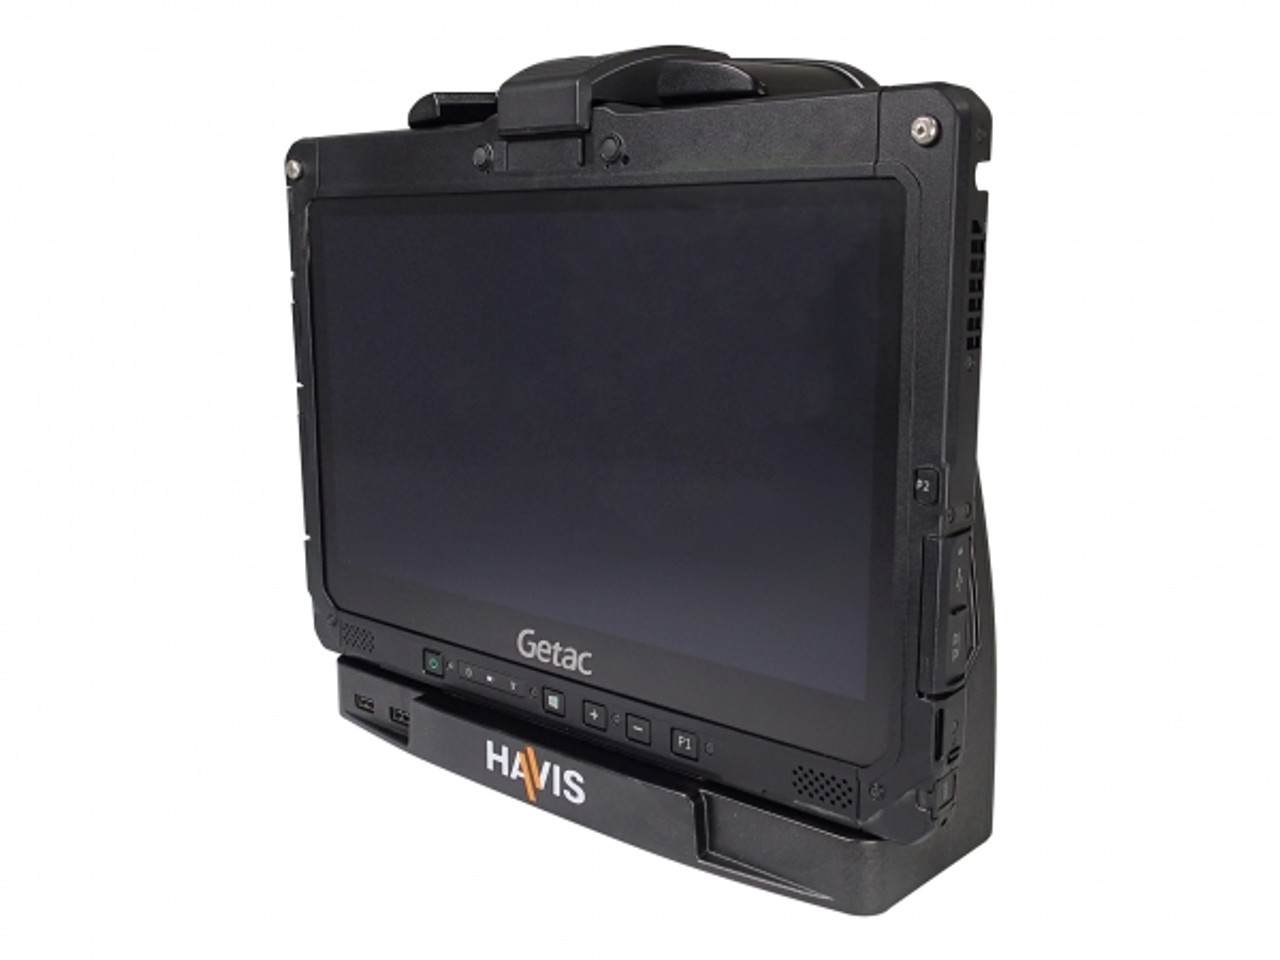 Havis DS-GTC-901 Docking Station for Getac K120 Tablet